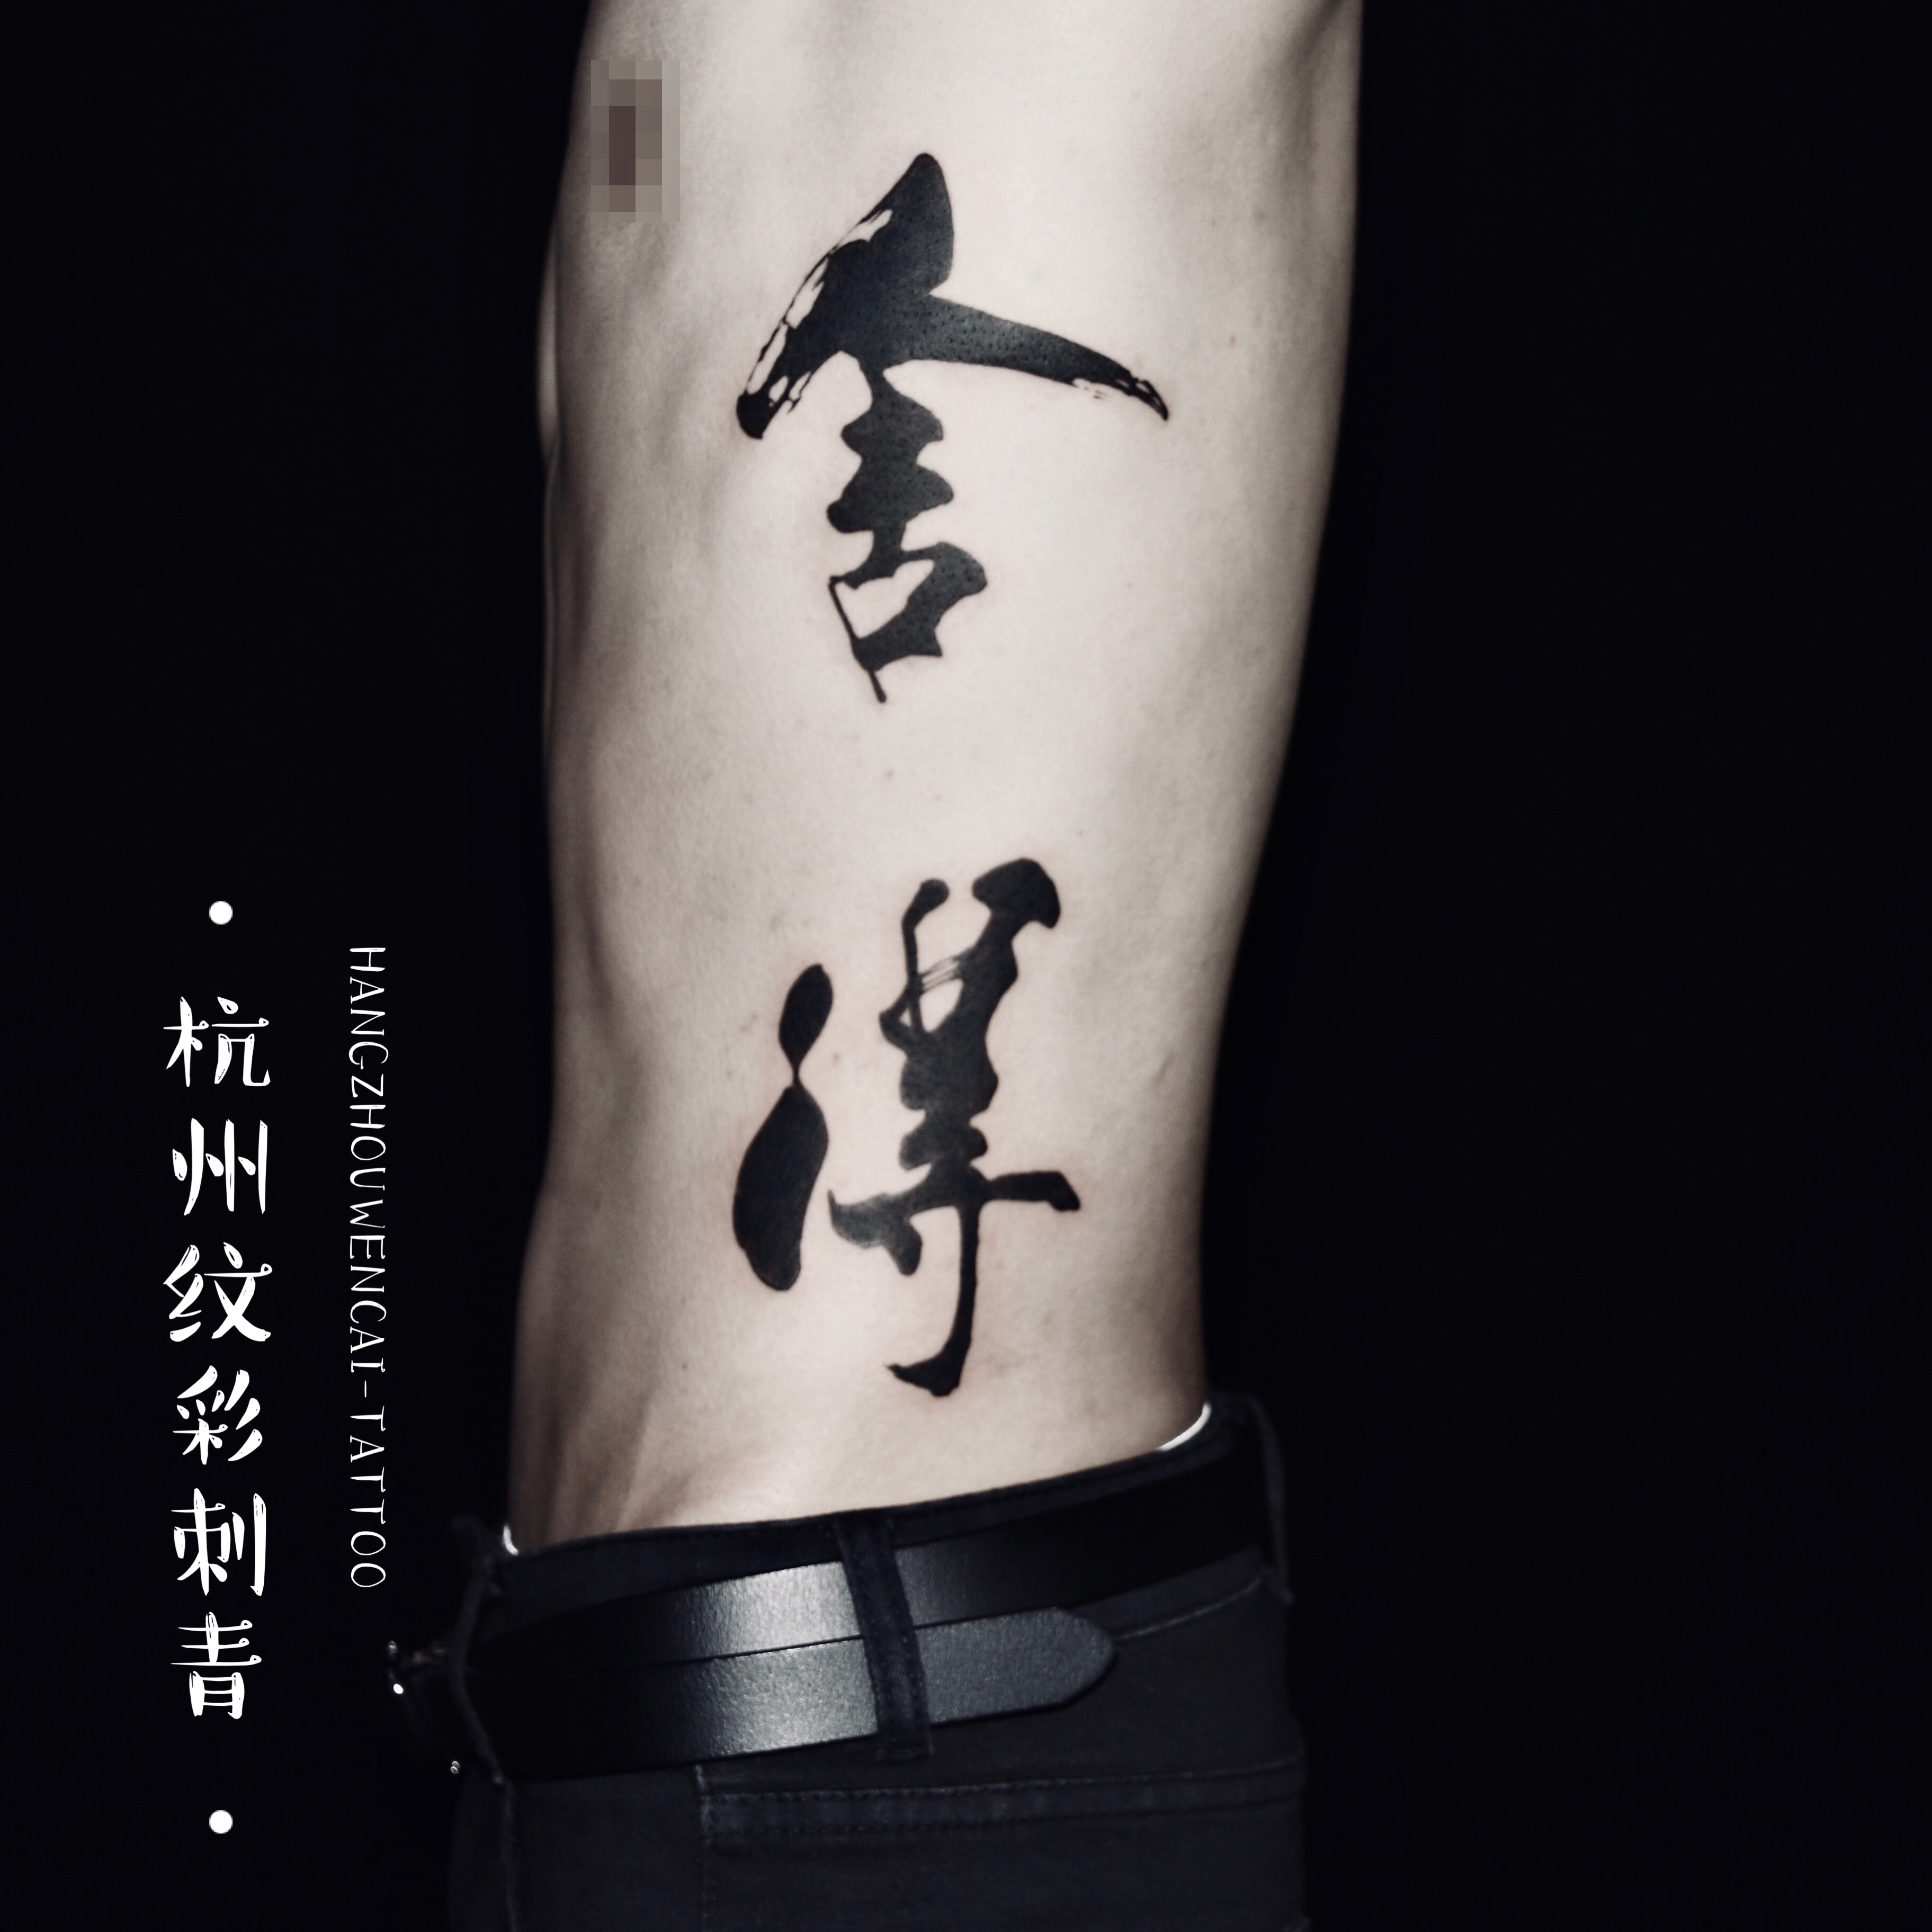 杭州做电商哥们的侧腰书法舍得汉字纹身图案